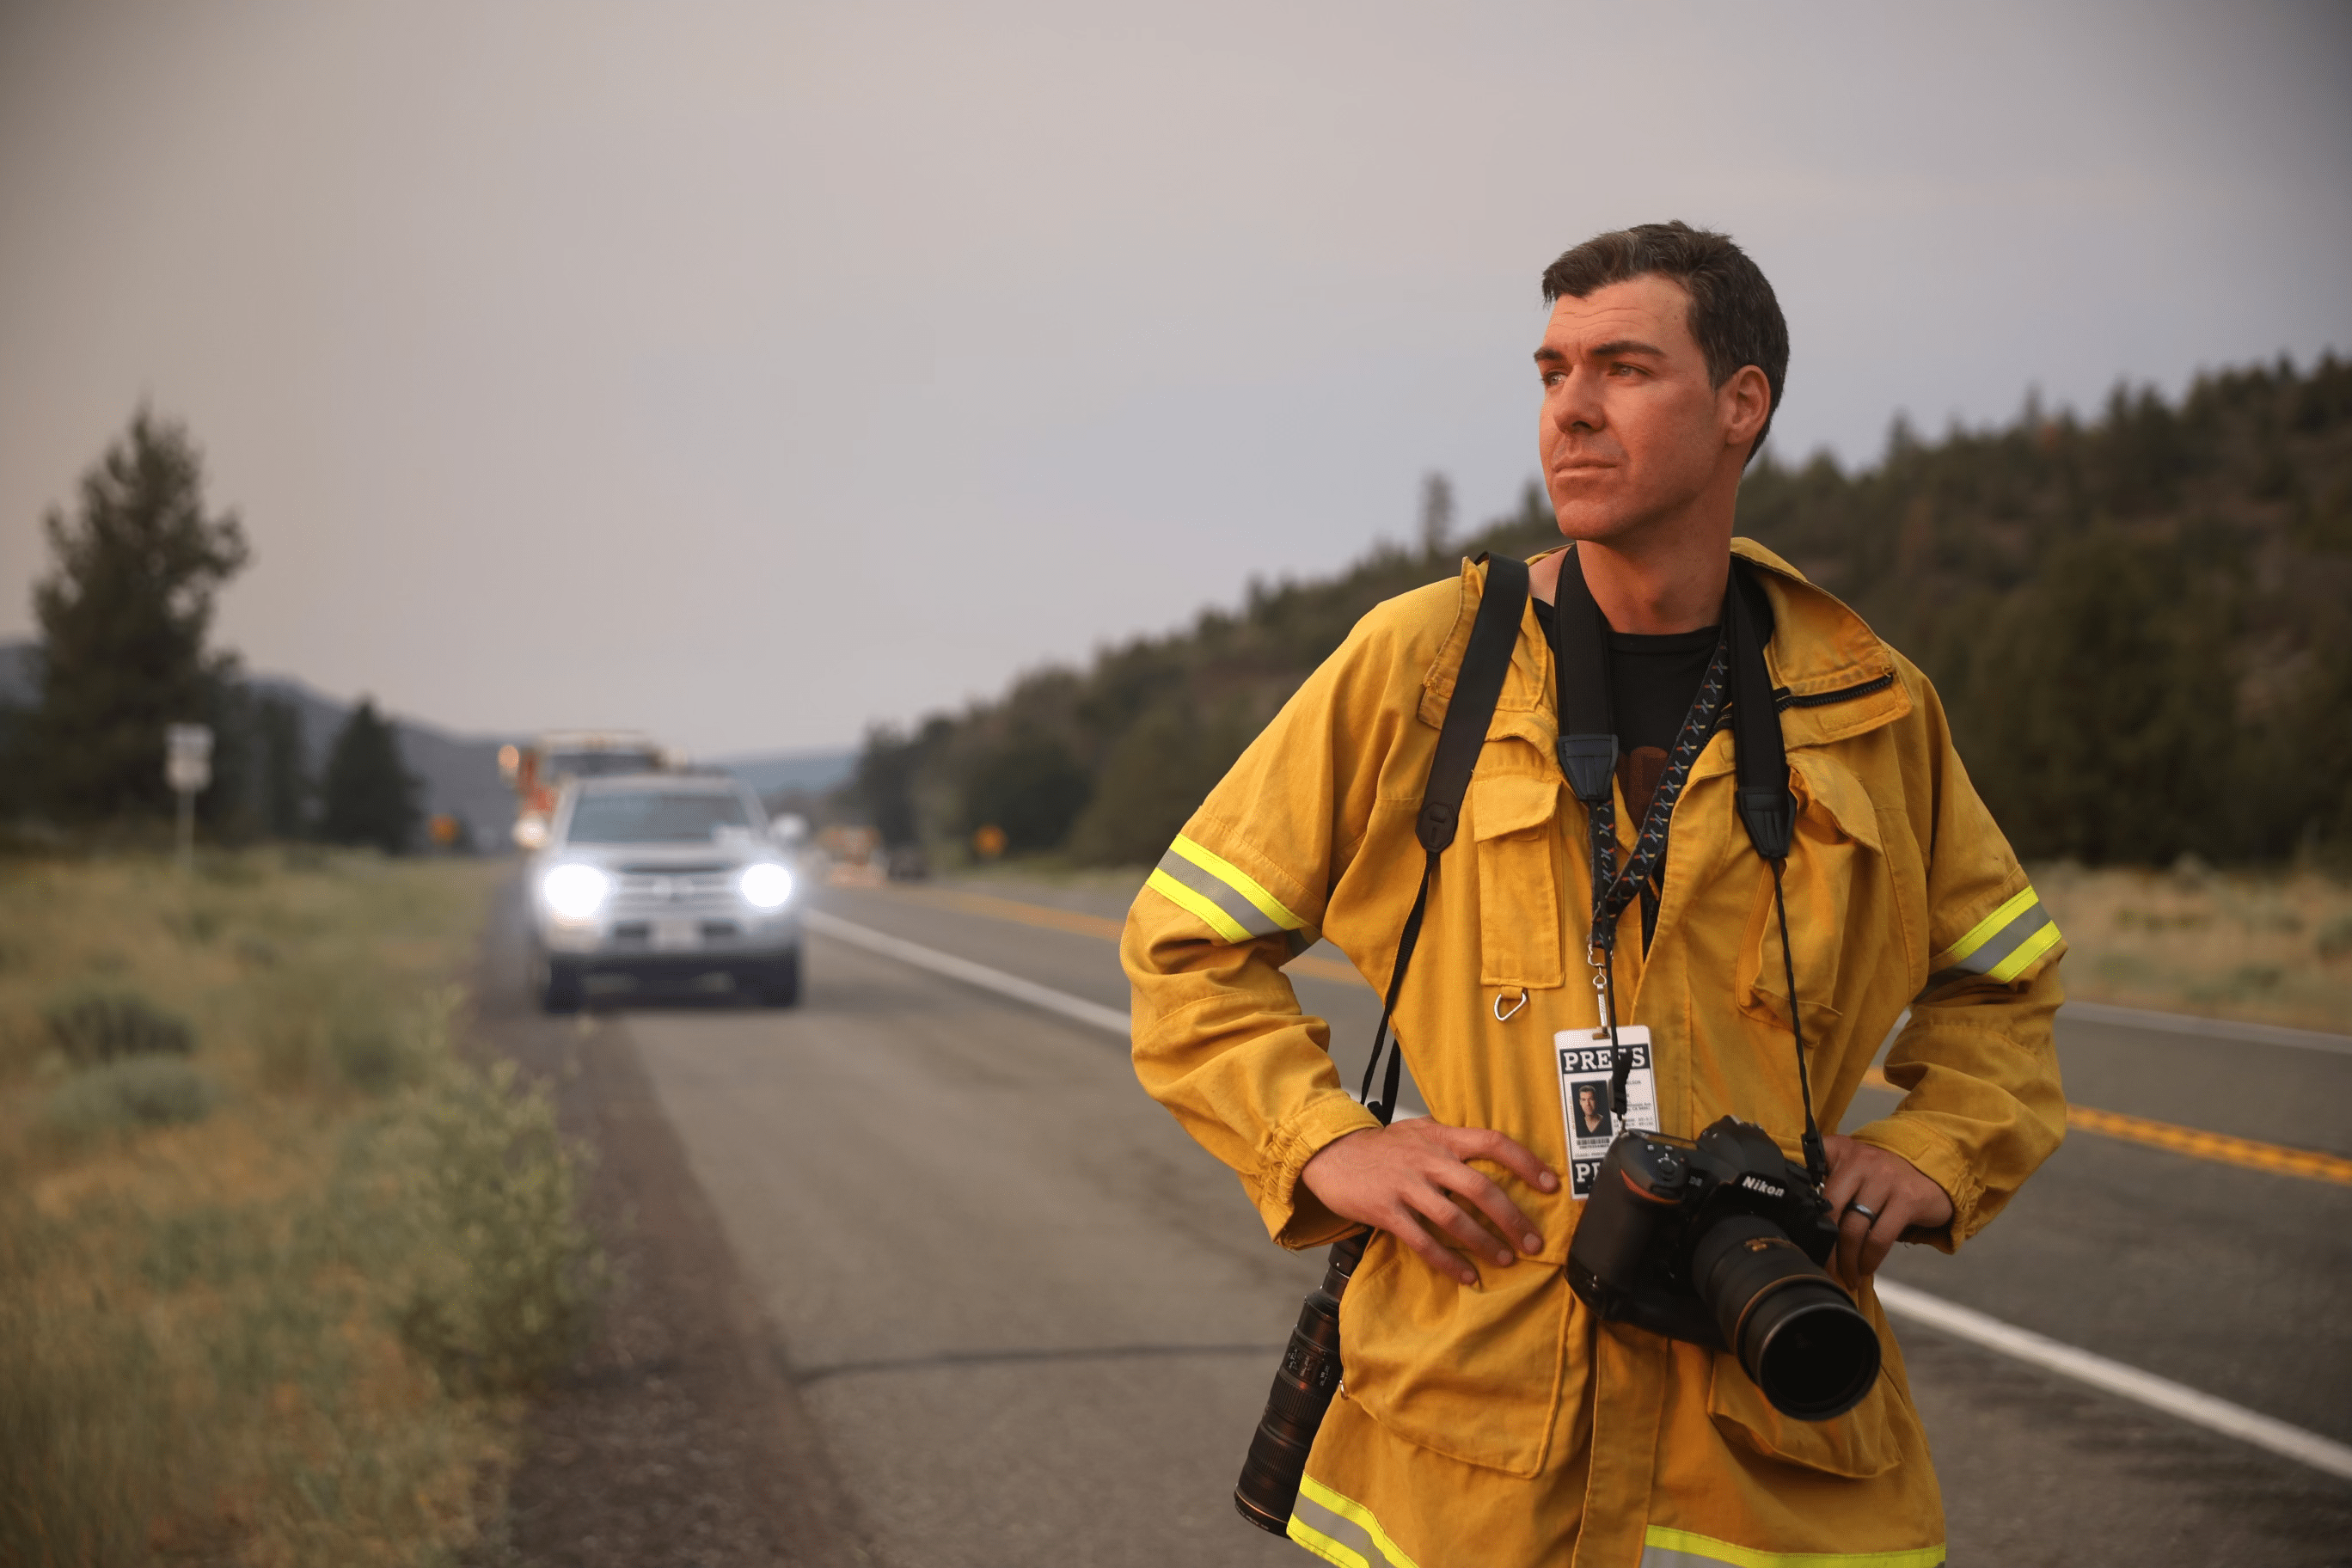 Фотограф Джош Эдельсон изучает пейзаж, стоя на дороге с камерой. На его шее висит пресс-бейдж.